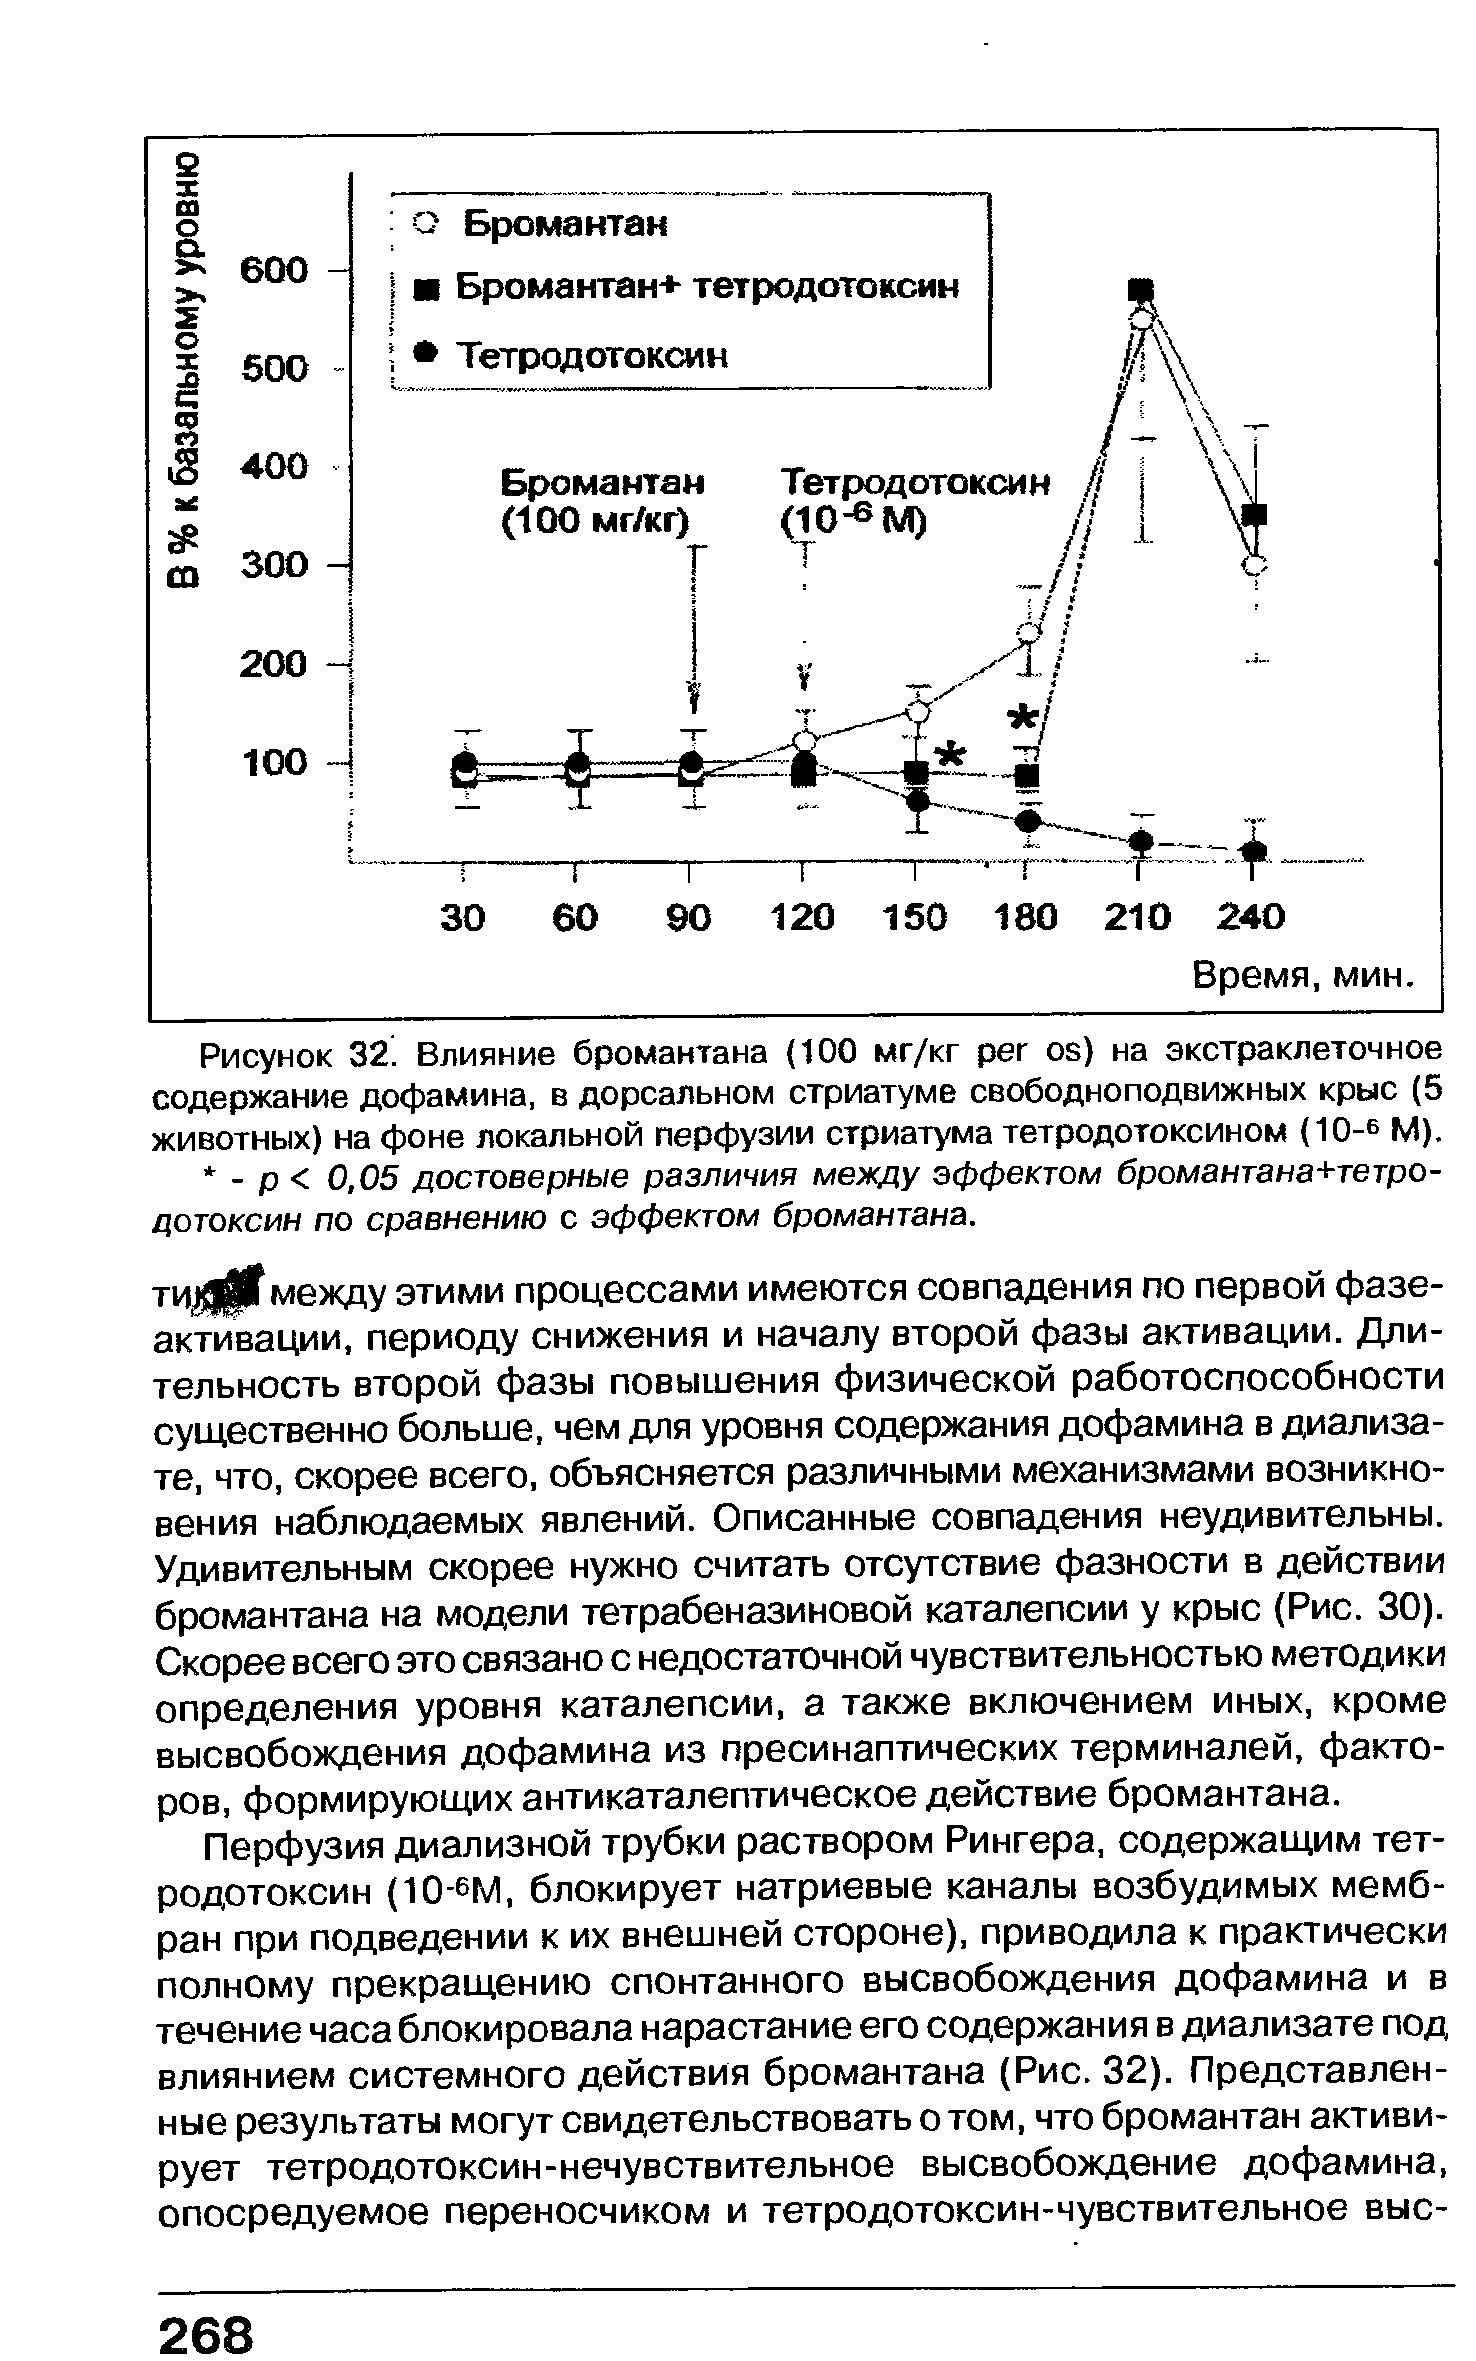 Рисунок 32. Влияние бромантана (100 мг/кг ) на экстраклеточное содержание дофамина, в дорсальном стриатуме свободноподвижных крыс (5 животных) на фоне локальной перфузии стриатума тетродотоксином (10-6 М).